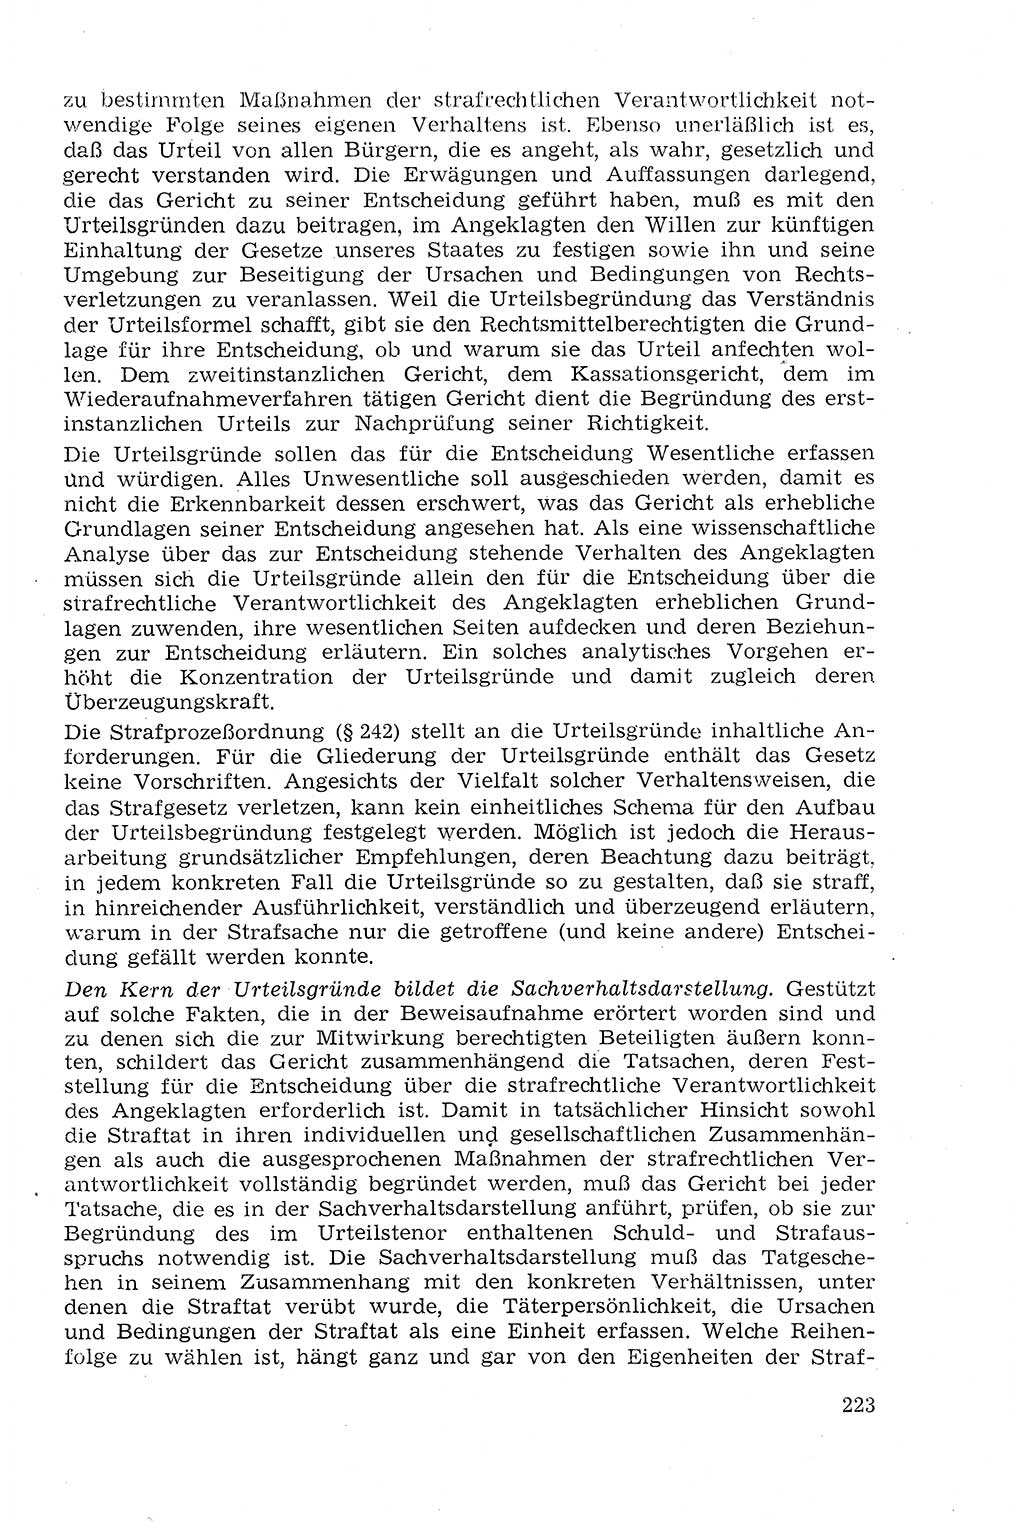 Strafprozeßrecht der DDR (Deutsche Demokratische Republik), Lehrmaterial 1969, Seite 223 (Strafprozeßr. DDR Lehrmat. 1969, S. 223)